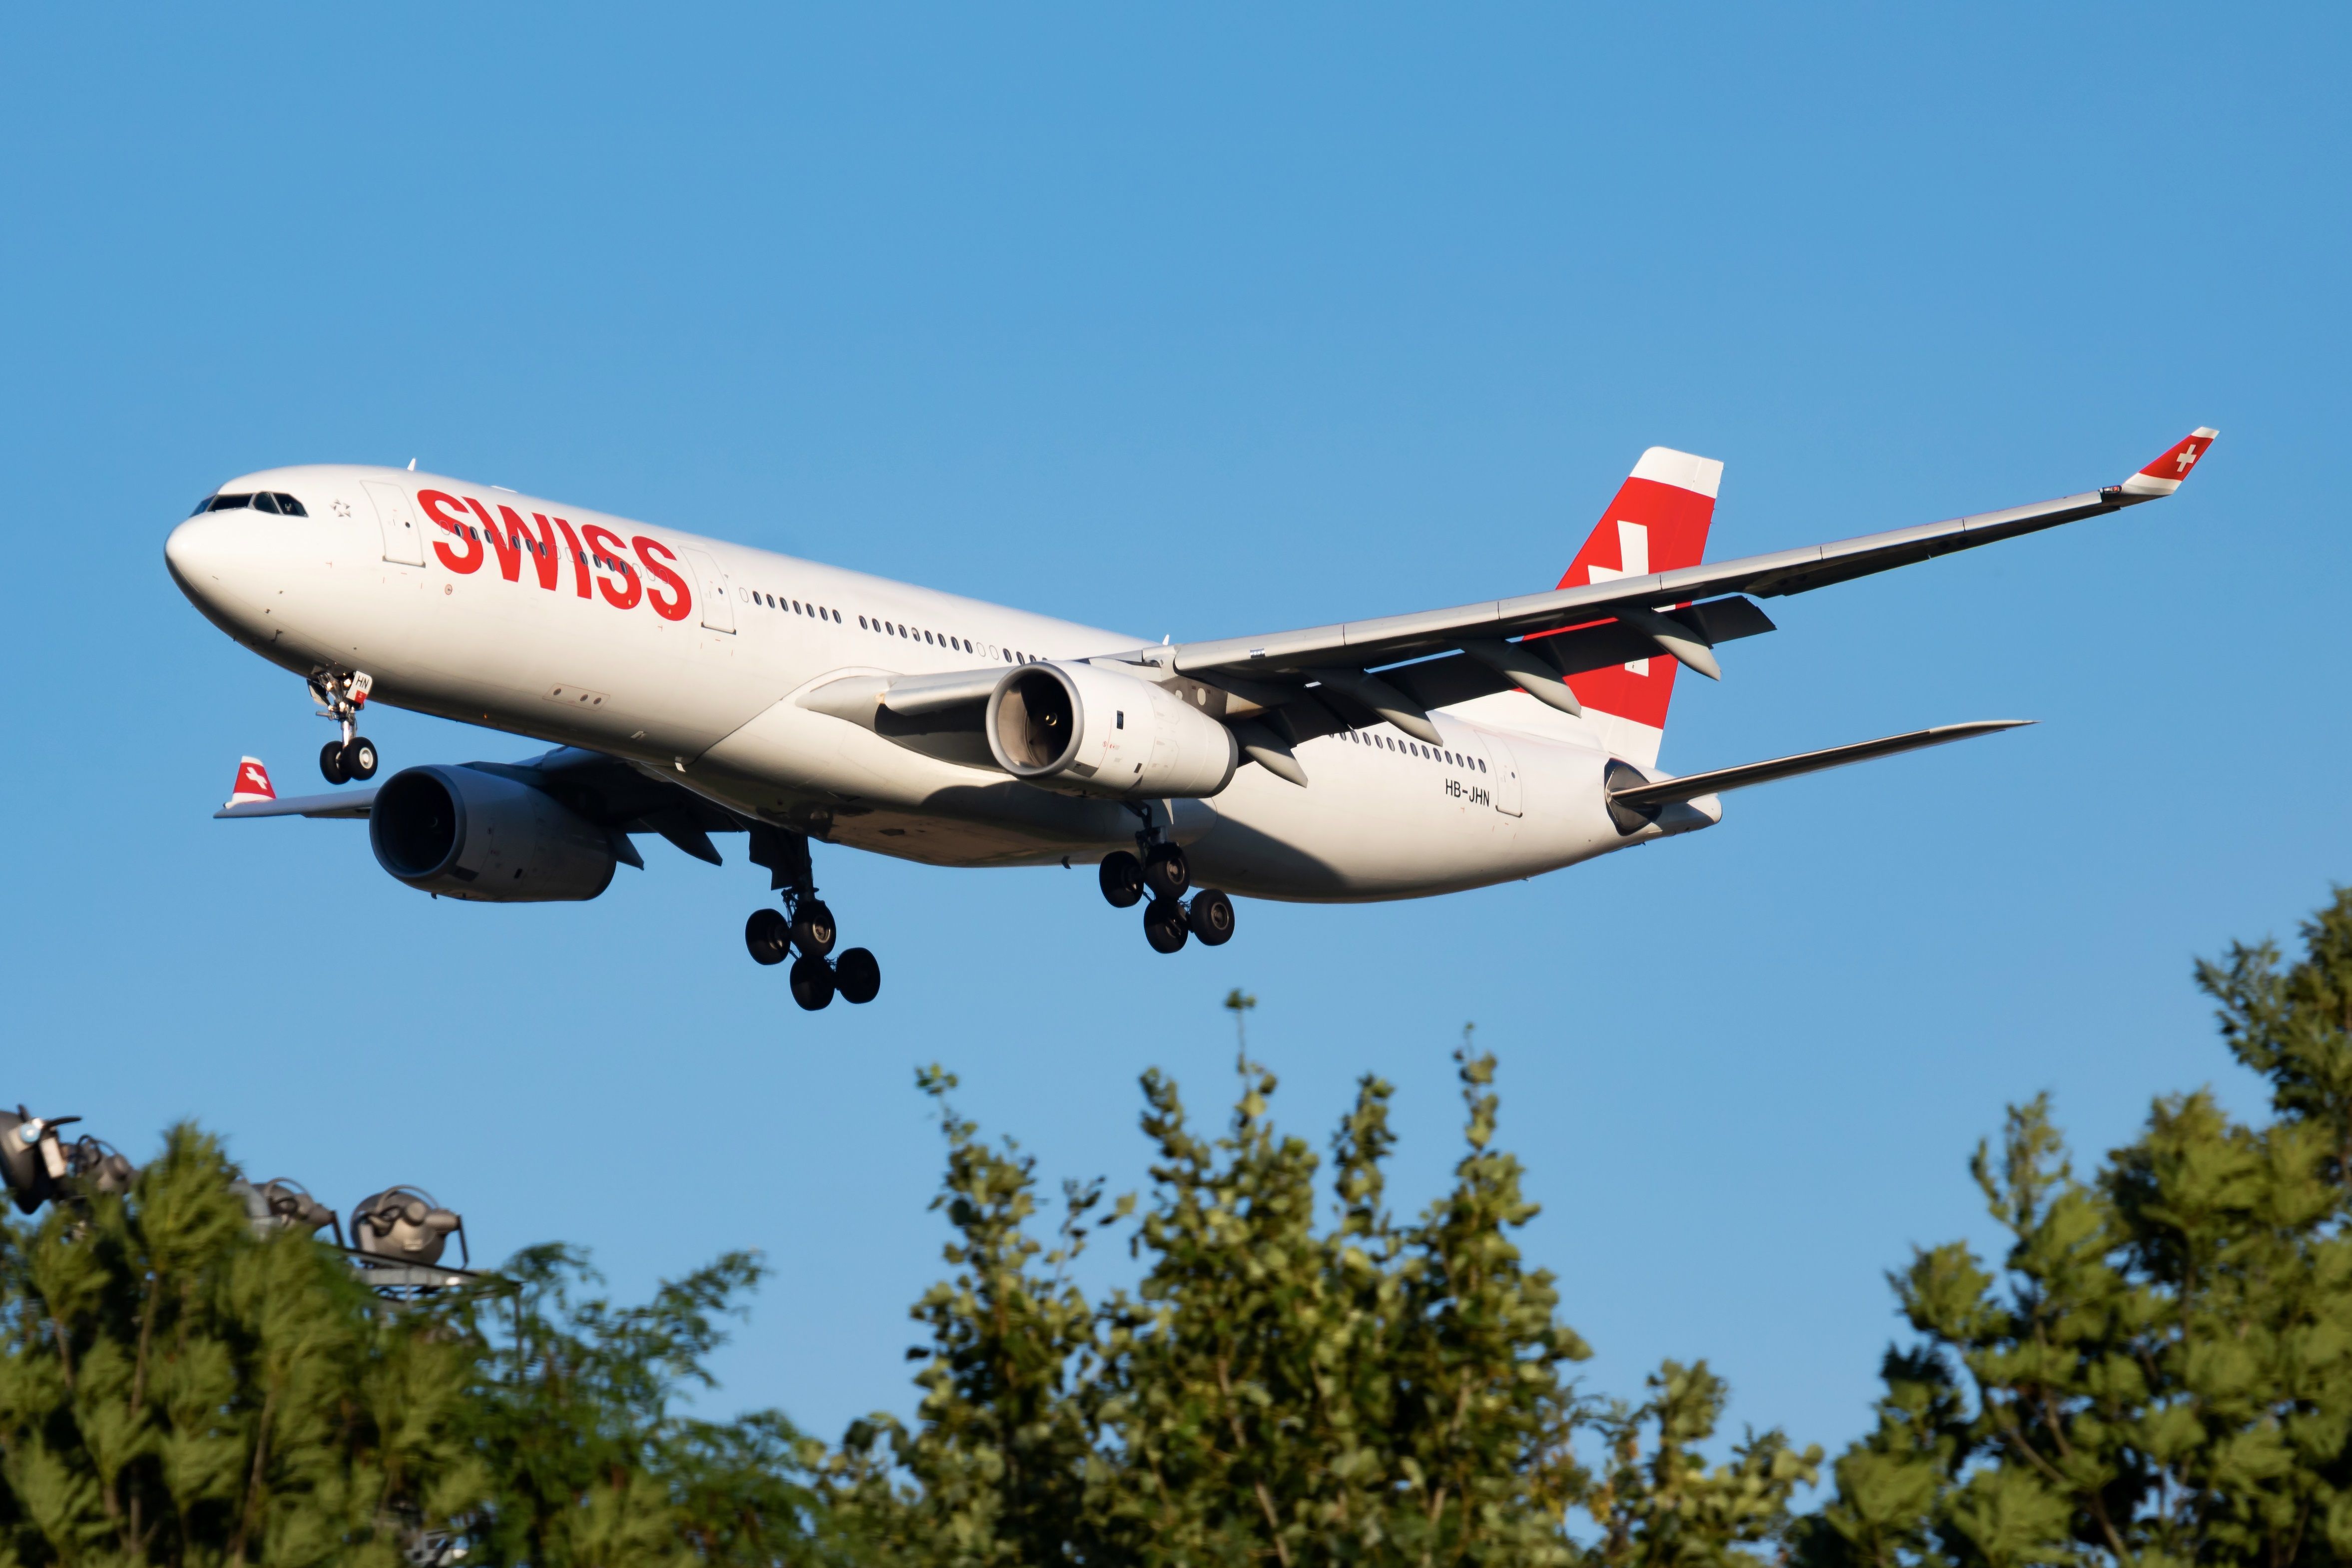 SWISS A330-300 landing